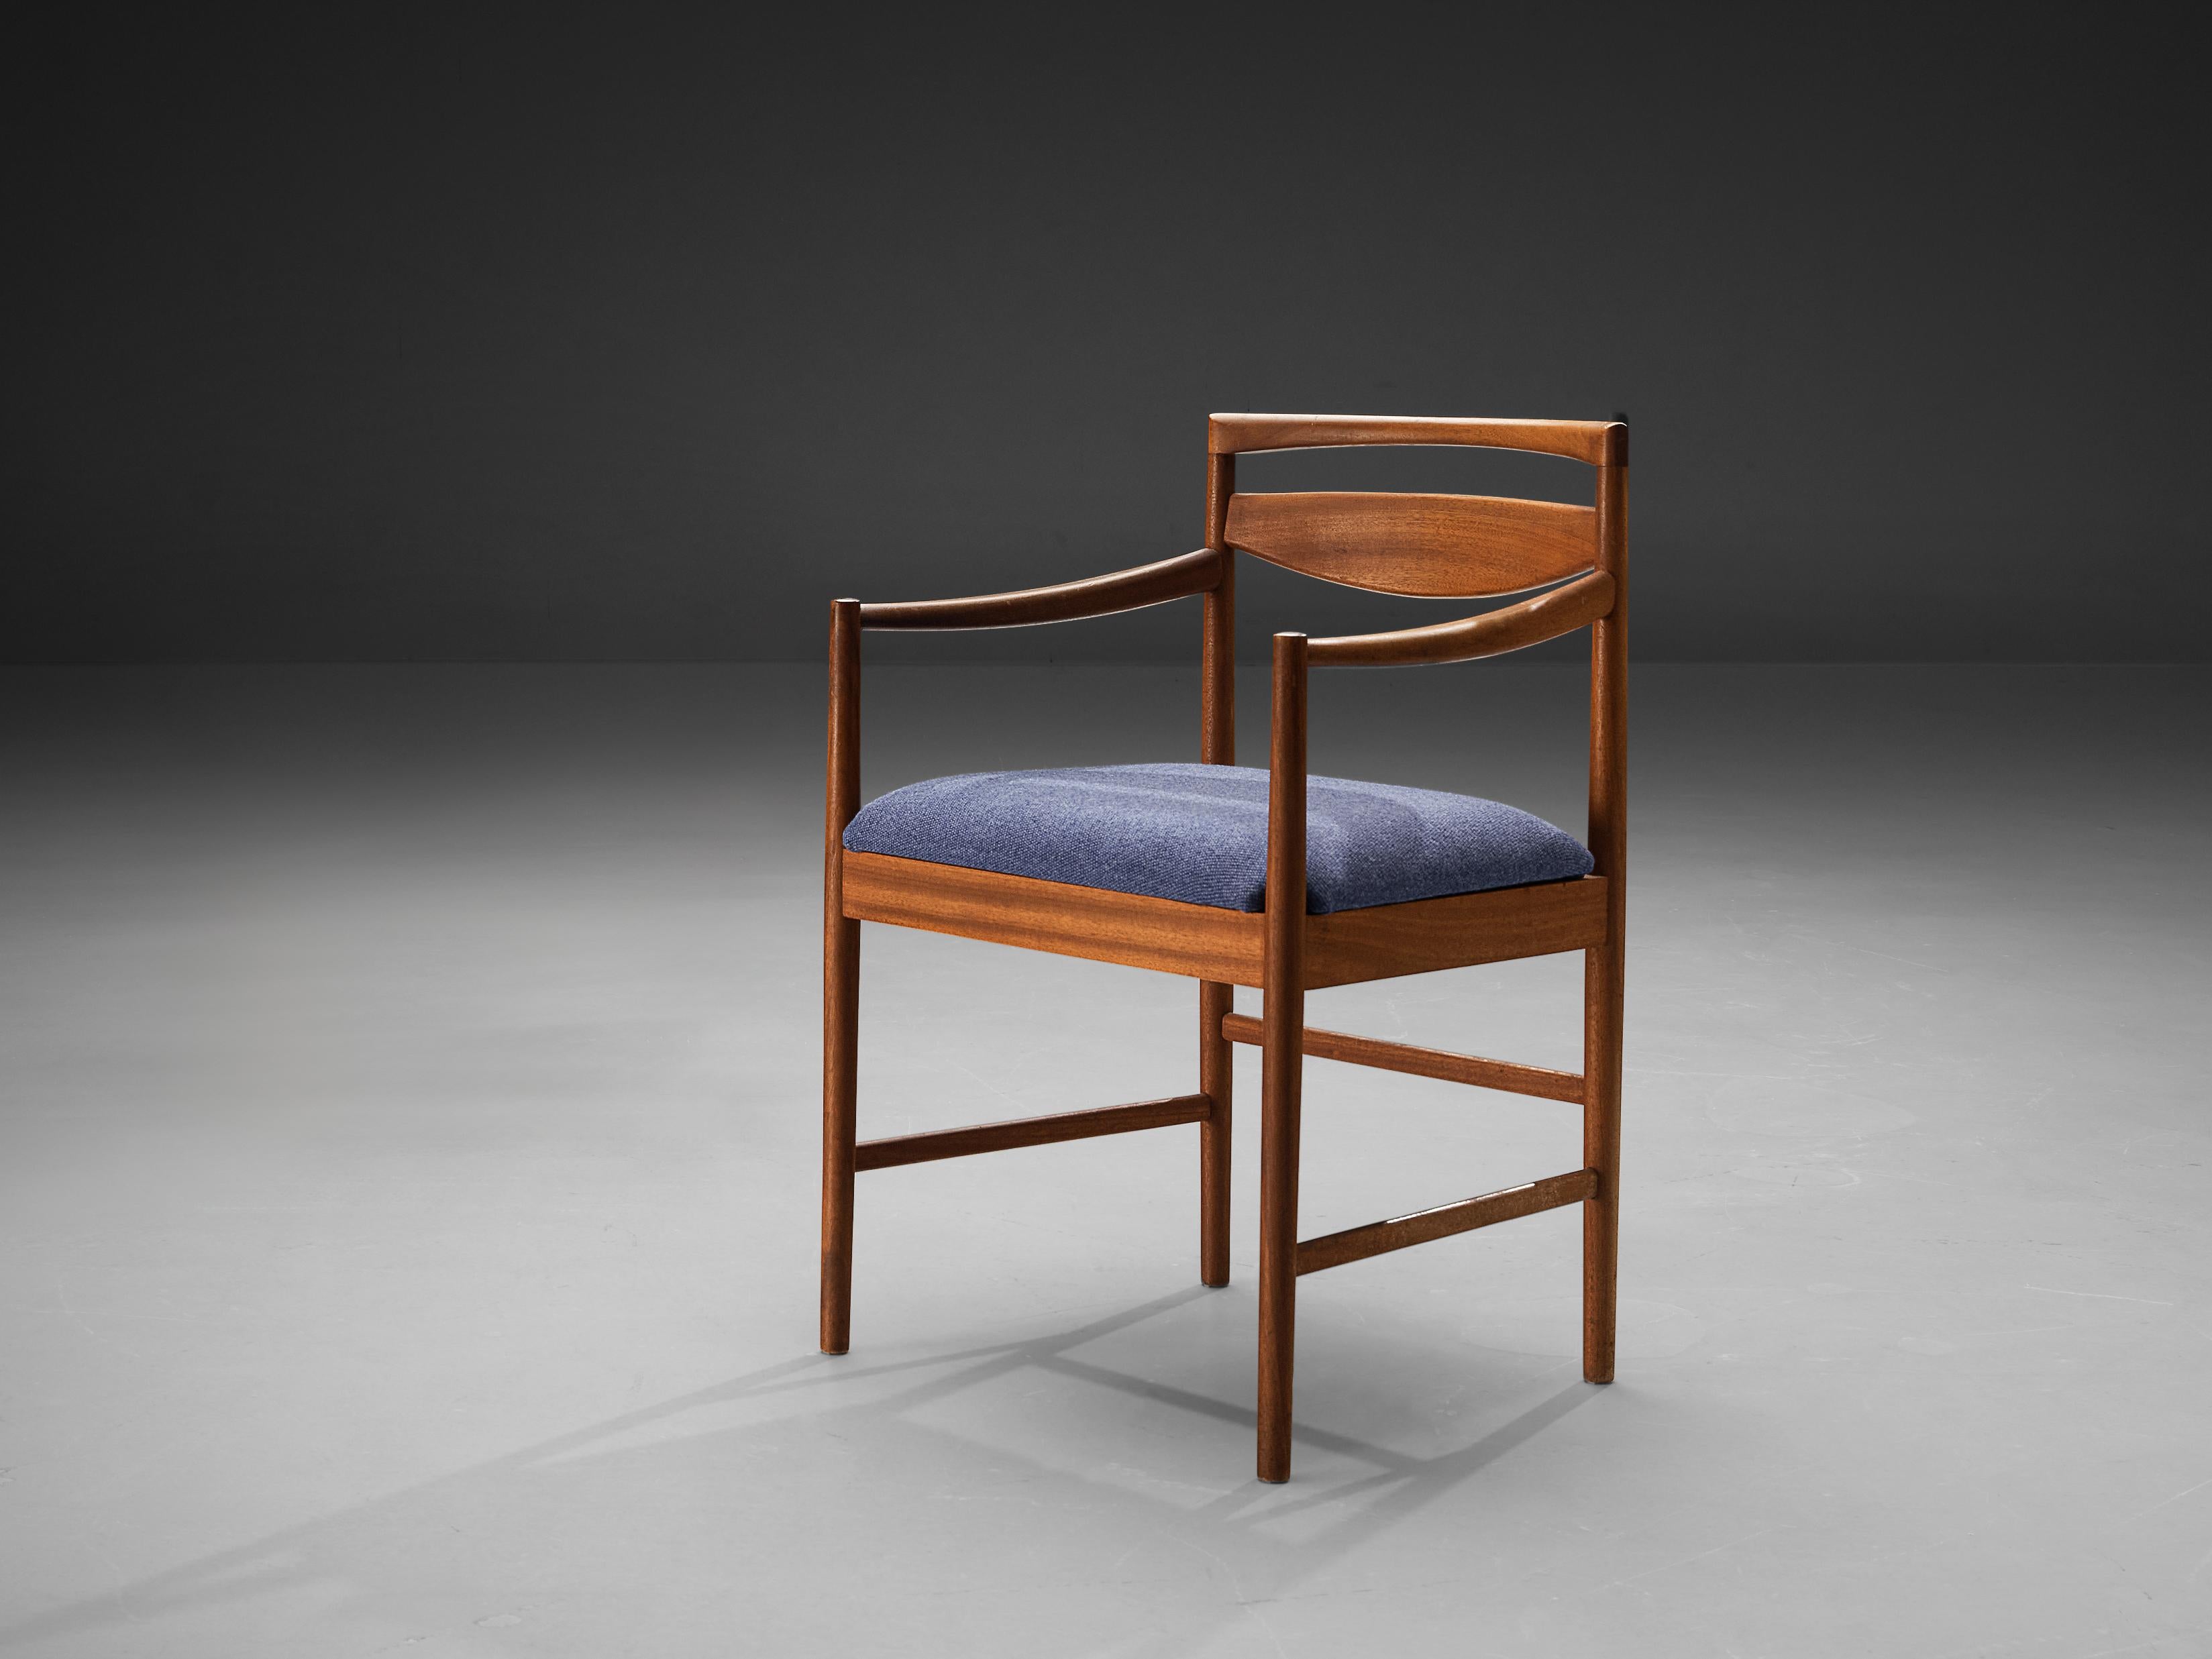 Chaise de salle à manger, teck, tissu, Europe, années 1960. 

Superbe chaise de salle à manger fabriquée en Europe dans les années 1960 et dotée d'un dossier remarquable. Le modèle est angulaire et modeste car il est construit en lignes